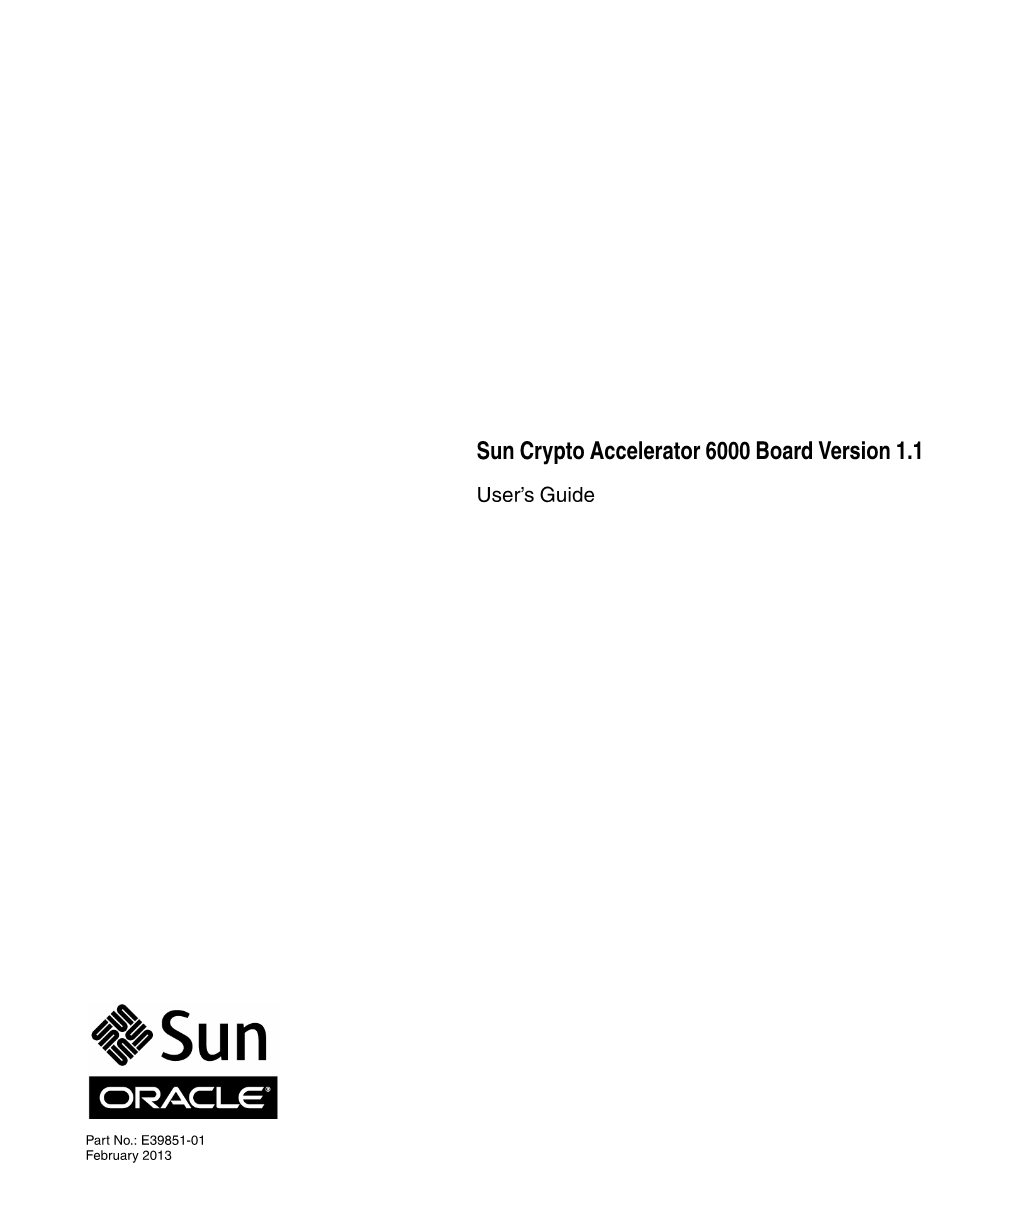 Sun Crypto Accelerator 6000 Board User's Guide for Version